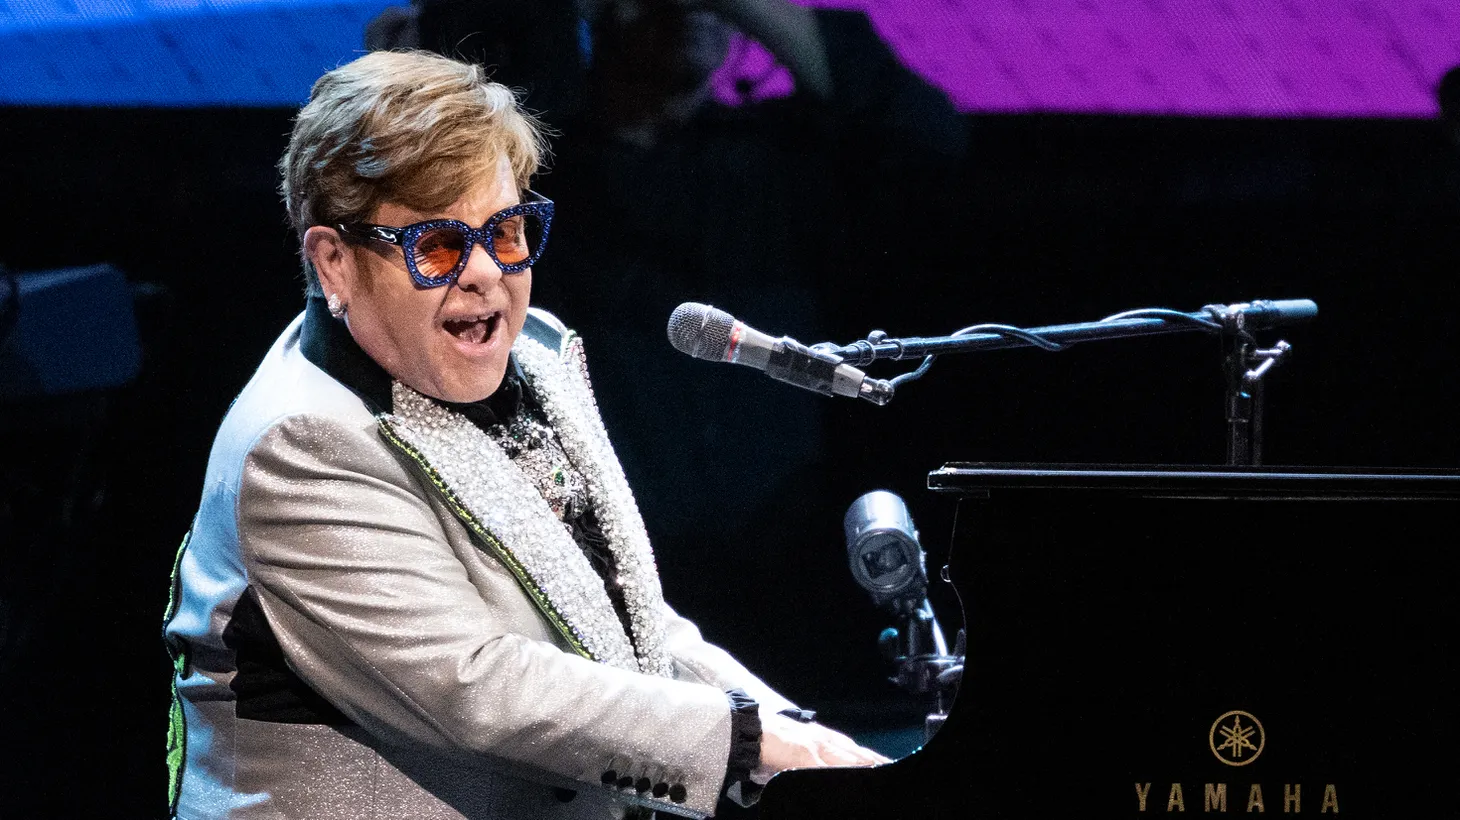 III. Elton John's Signature Style and Iconic Fashion